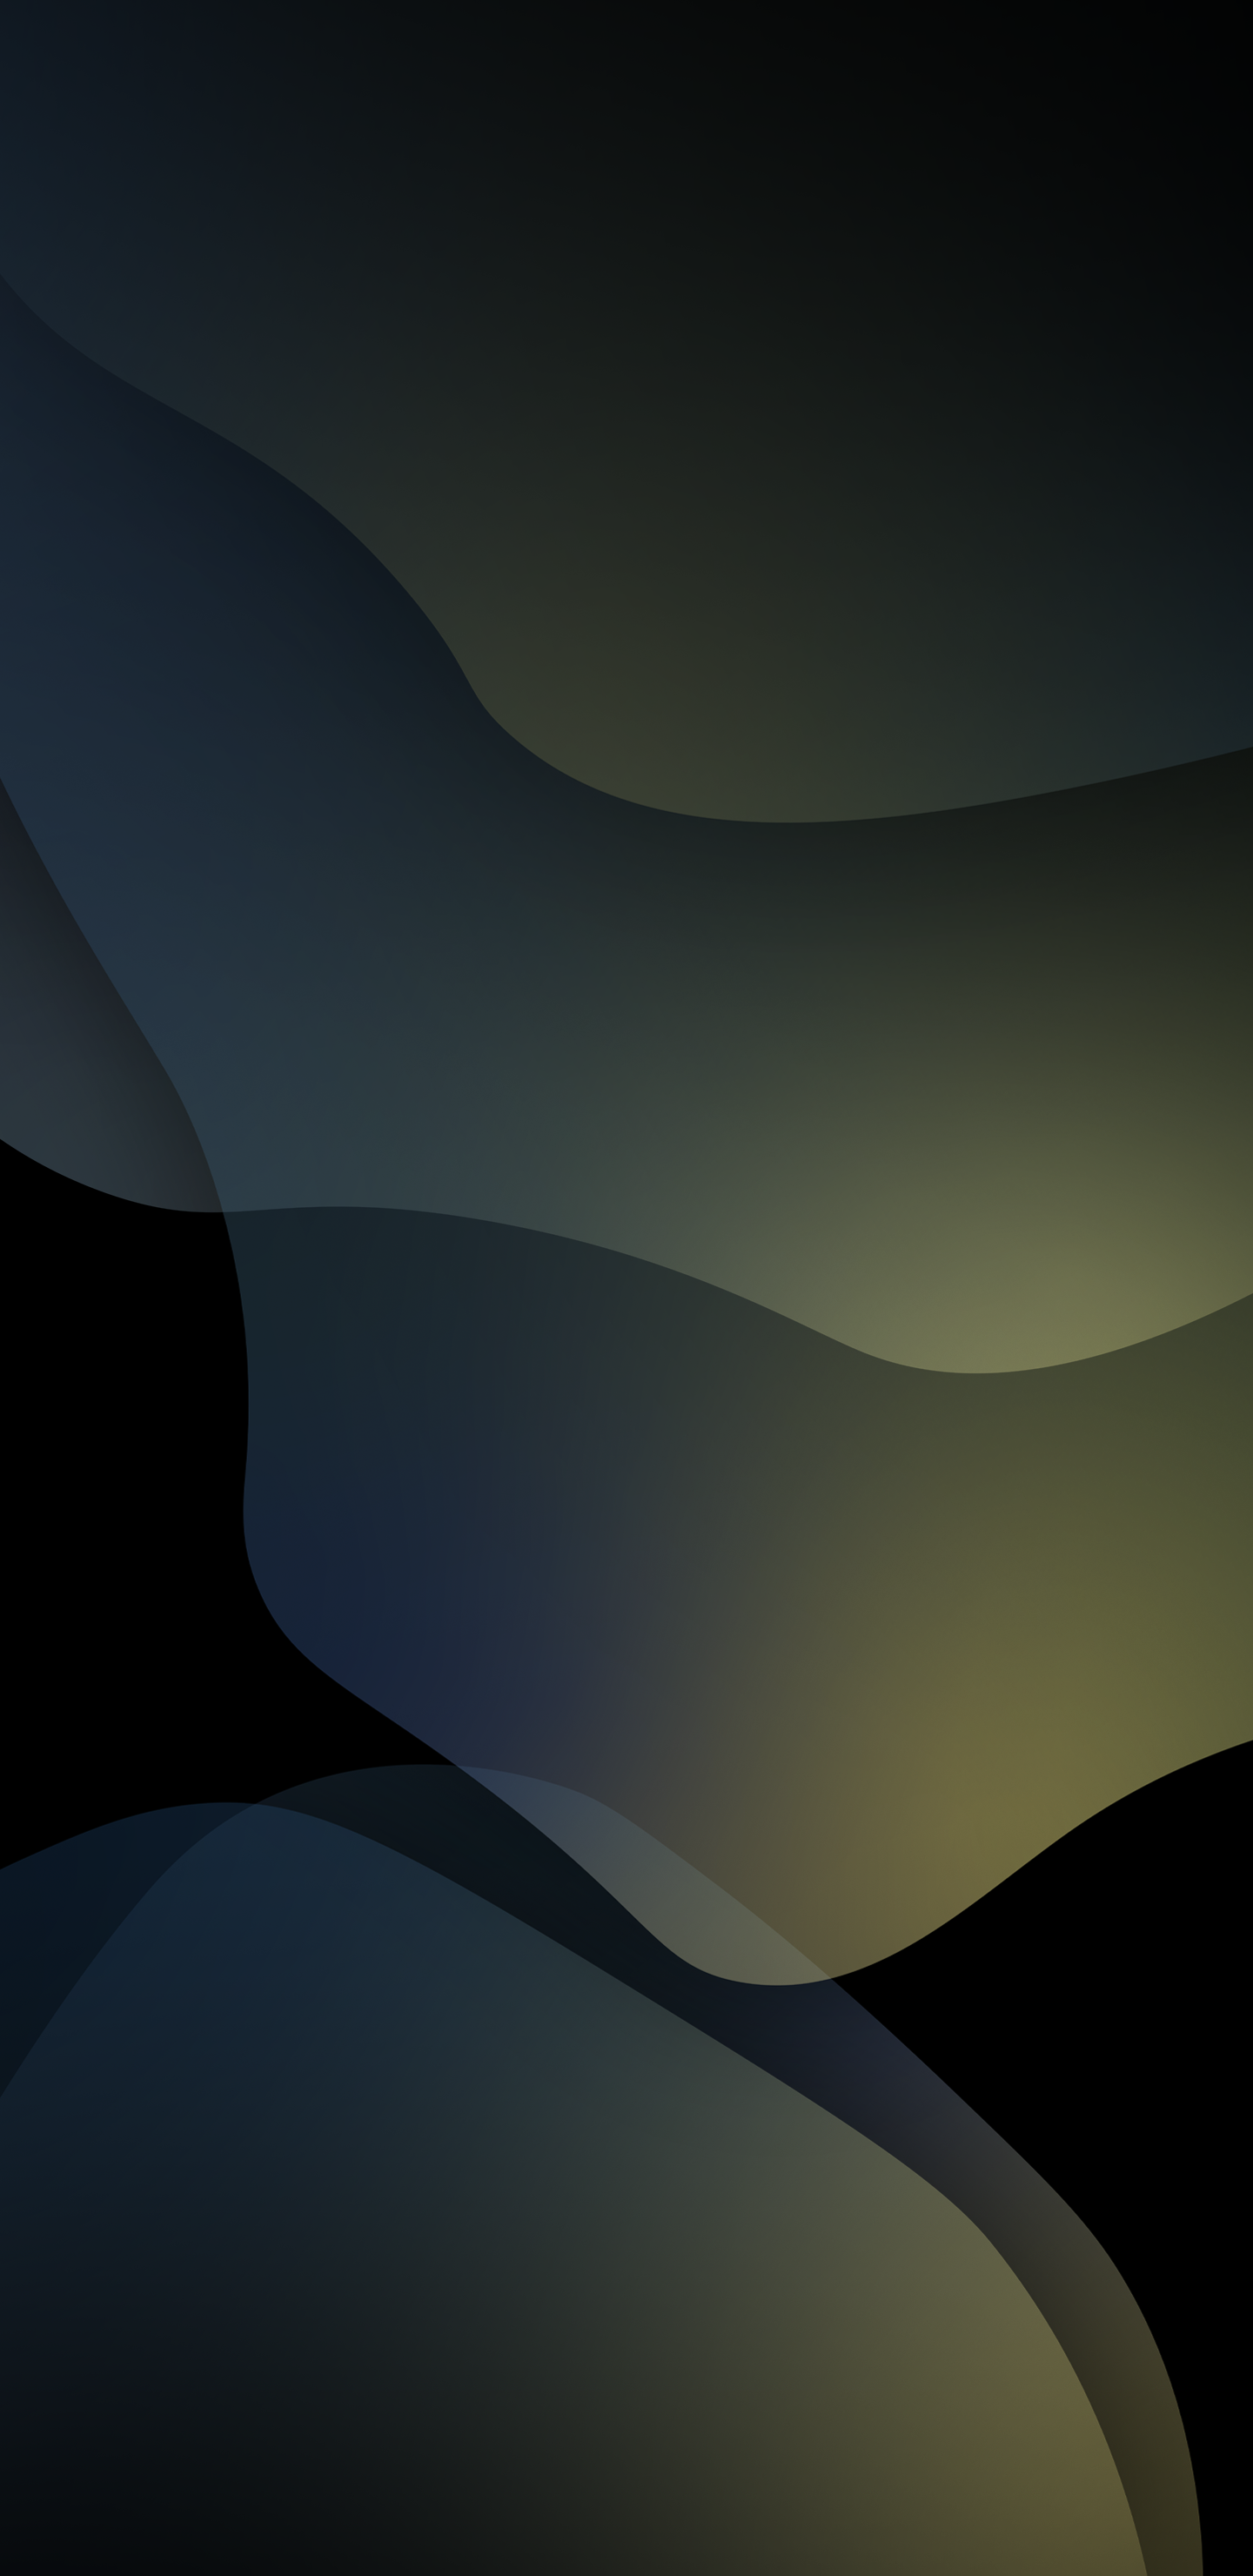 iOS 13 Dark Wallpaper Free iOS 13 Dark Background